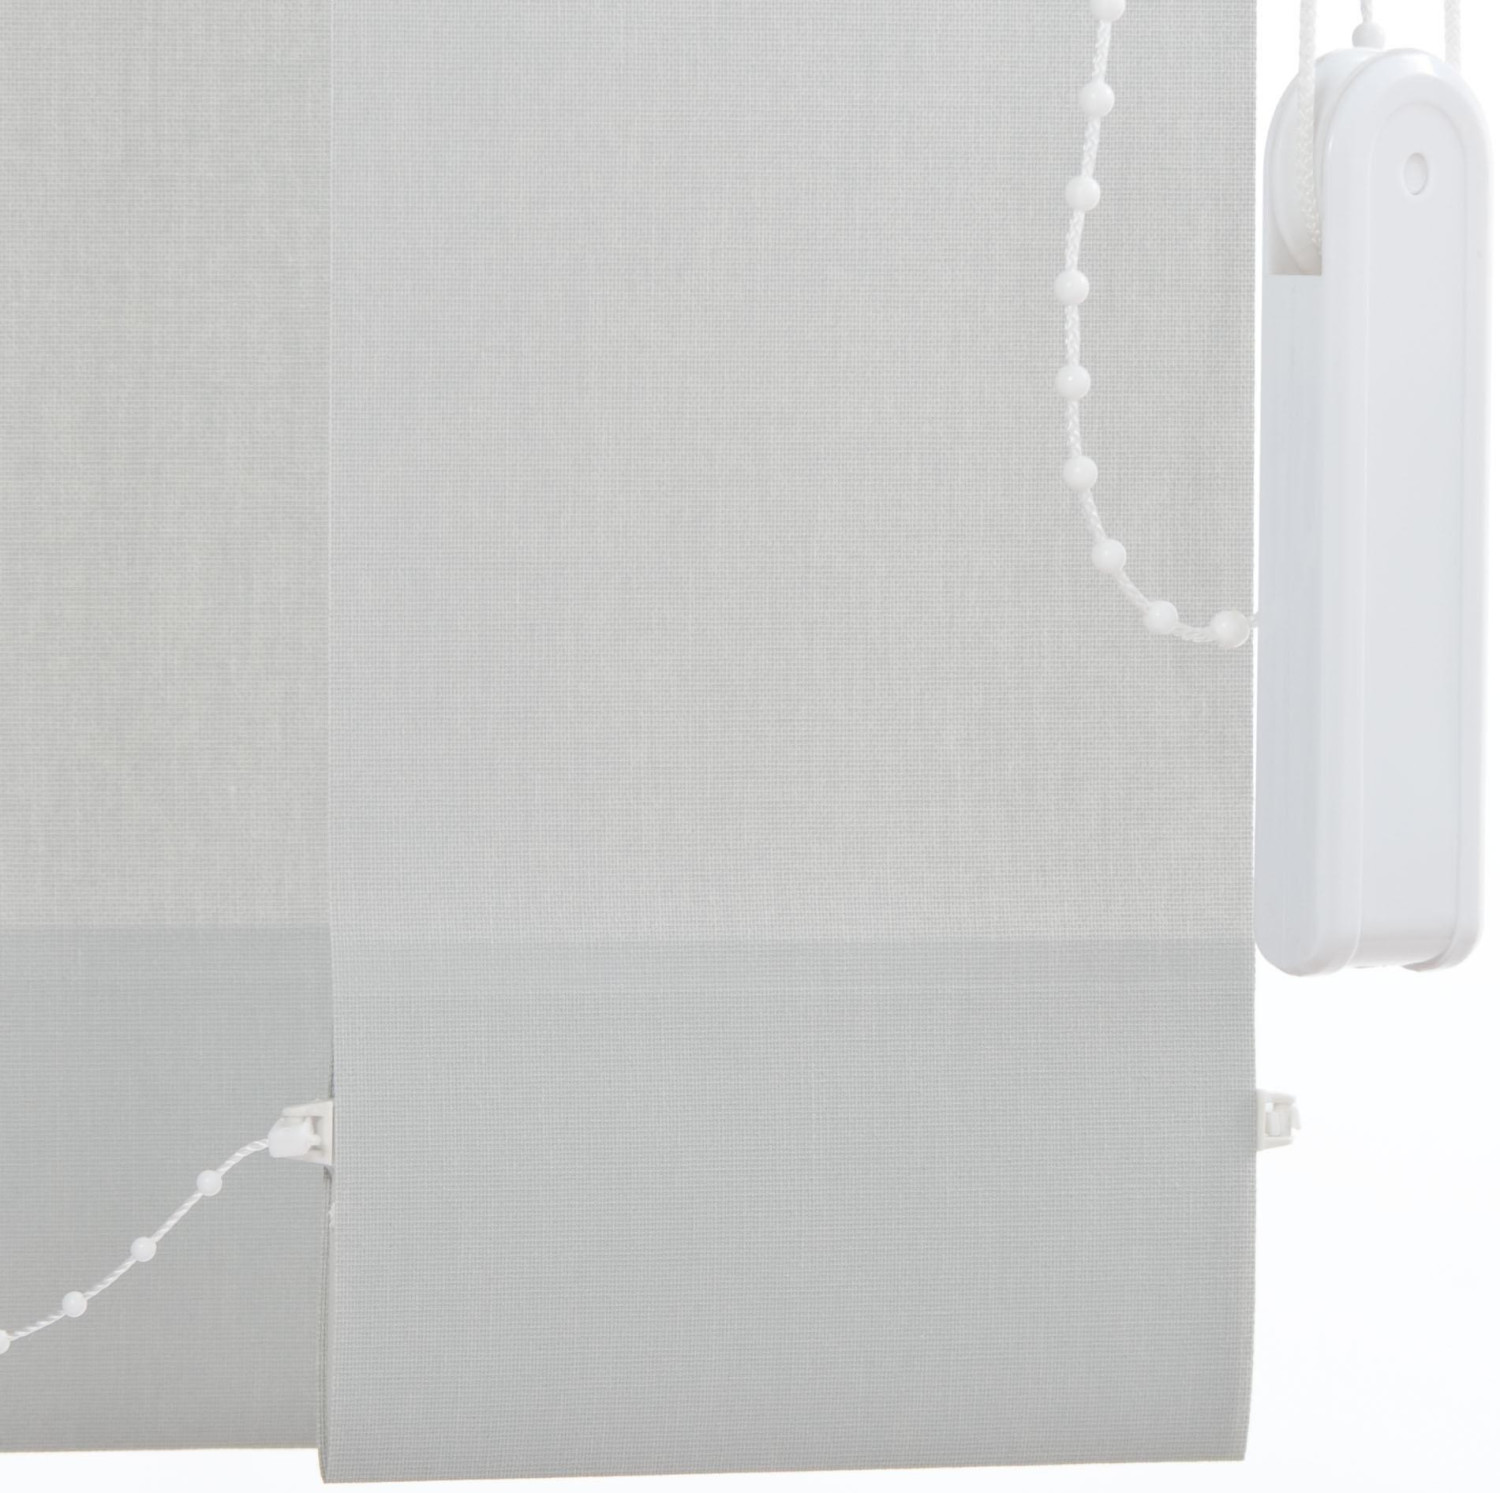 Liedeco Lamellenvorhang-Vertikalanlage 89mm (180 x 200cm) Grau ab 136,95 €  | Preisvergleich bei